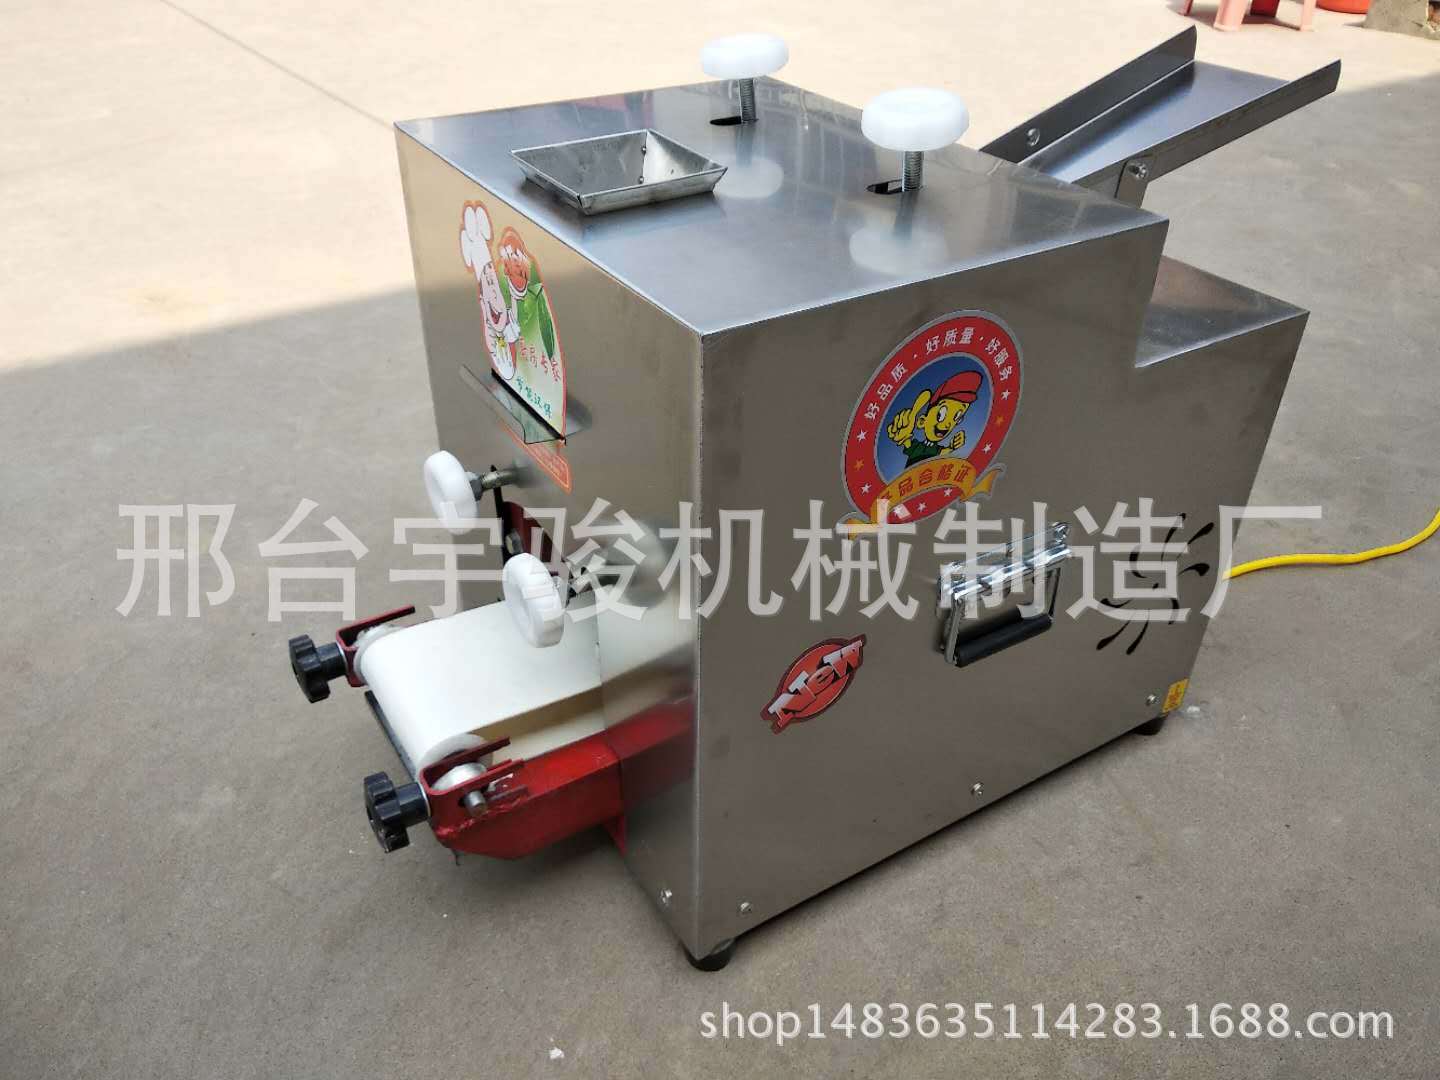 饺子机自动不锈钢小型调速商用包子皮食品机械设备厂家特价示例图6